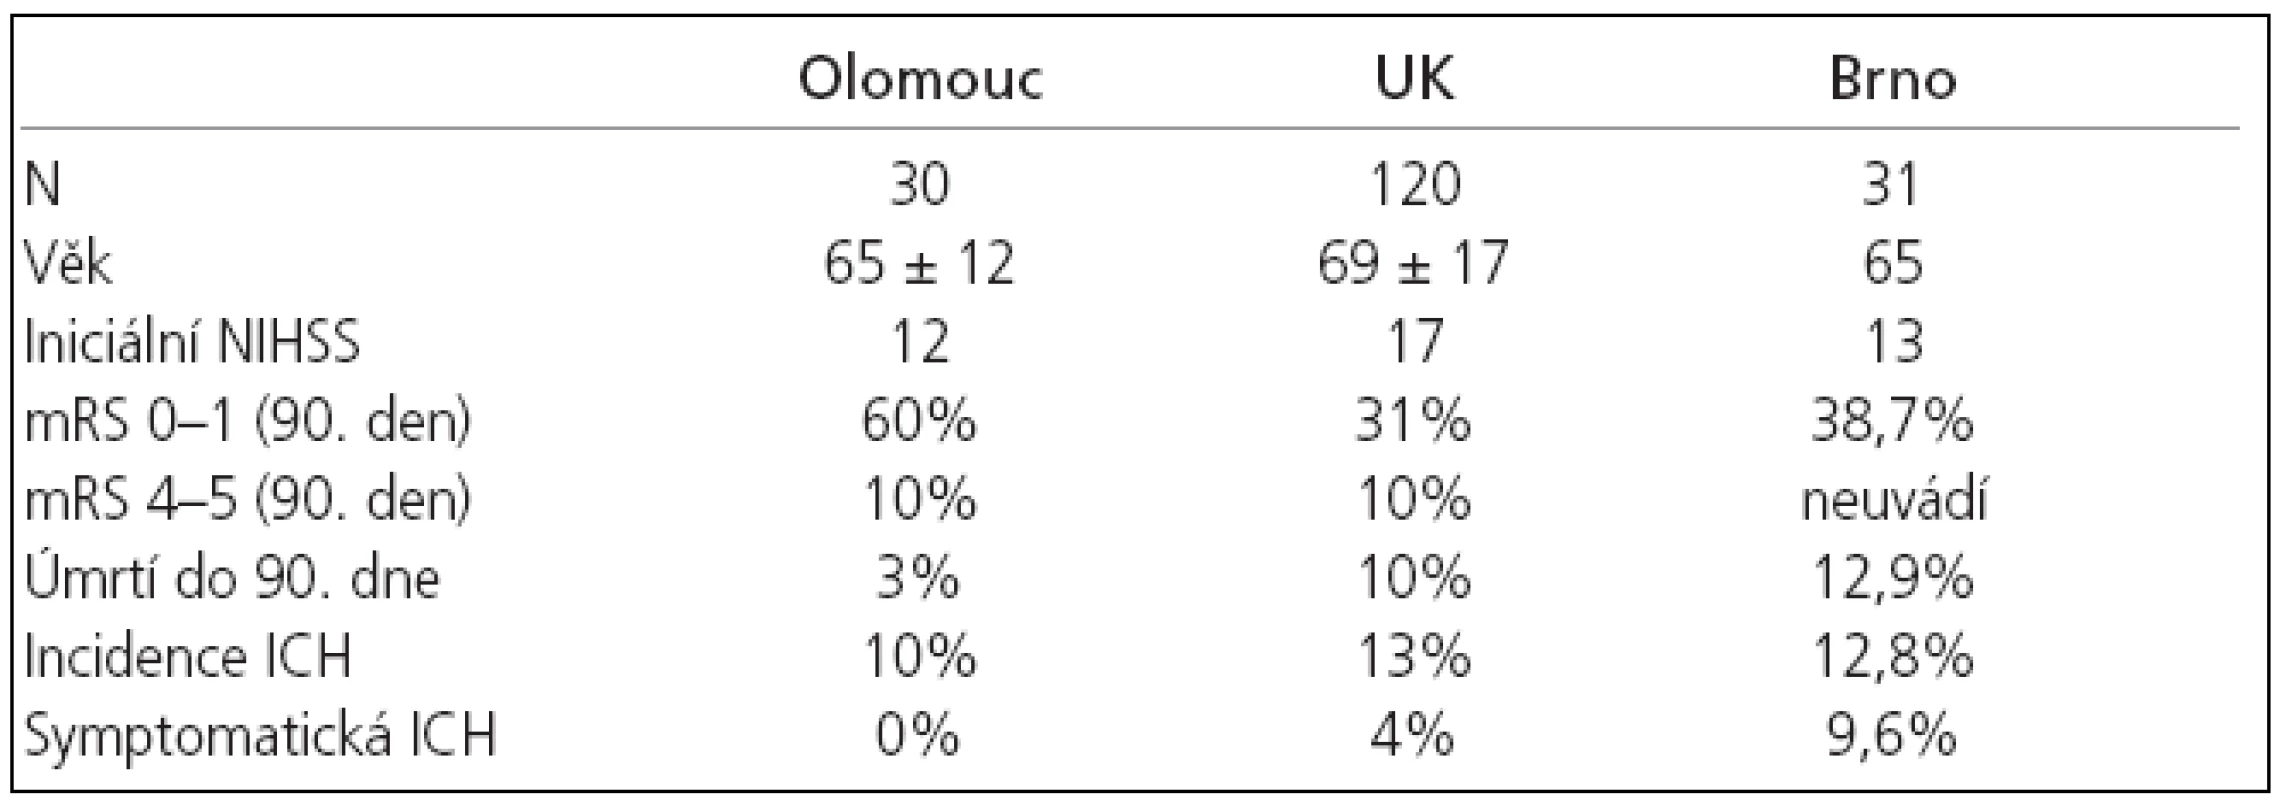 Srovnání prezentovaného souboru (Olomouc) s výsledky Walterse et al (Velká Británie - UK) a Mikulíka et at (Brno).